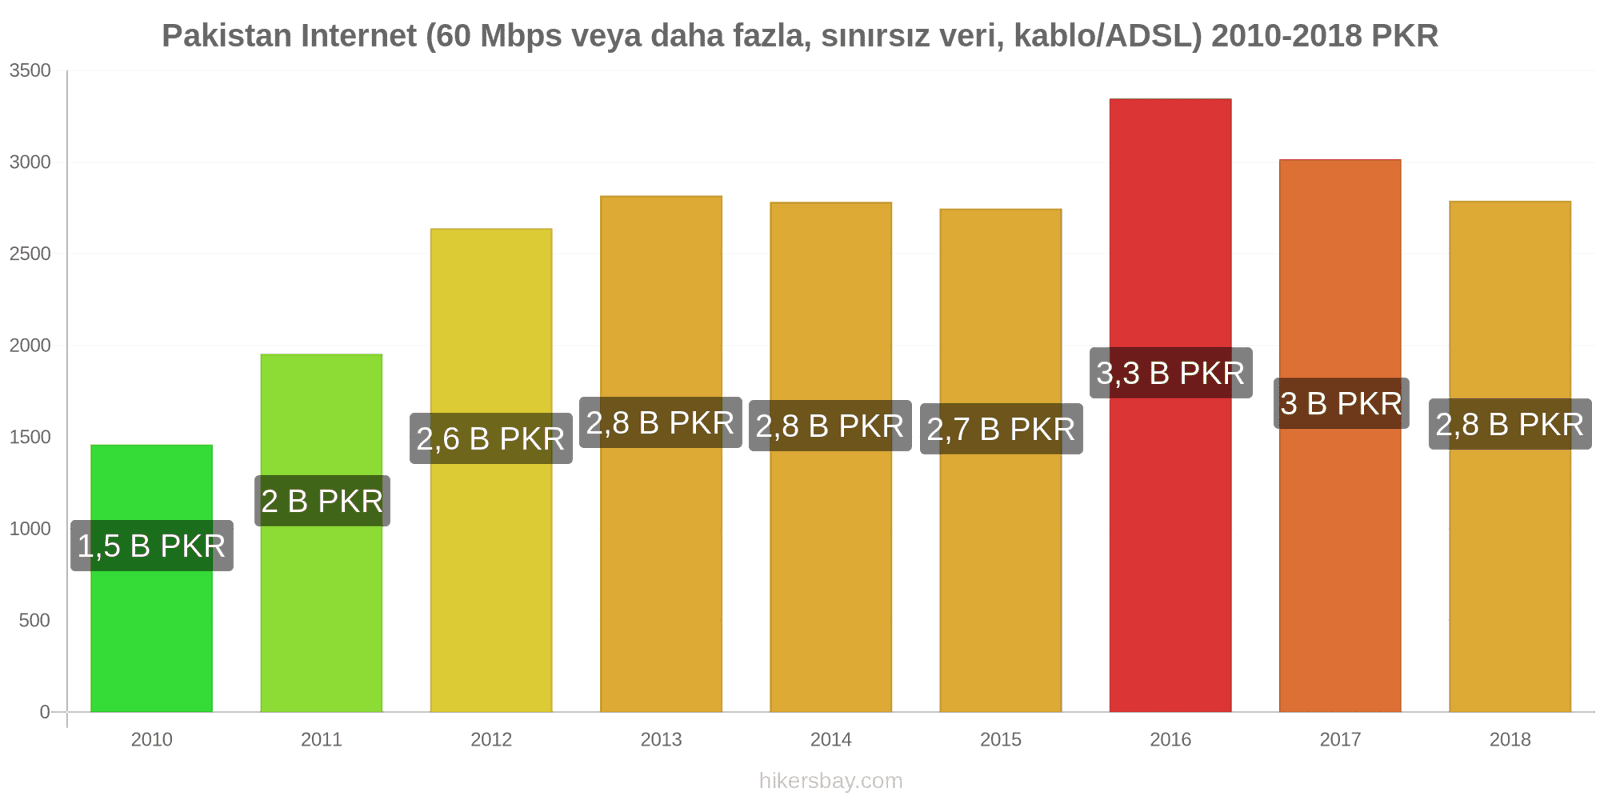 Pakistan fiyat değişiklikleri İnternet (60 Mbps veya daha fazla, sınırsız veri, kablo/ADSL) hikersbay.com